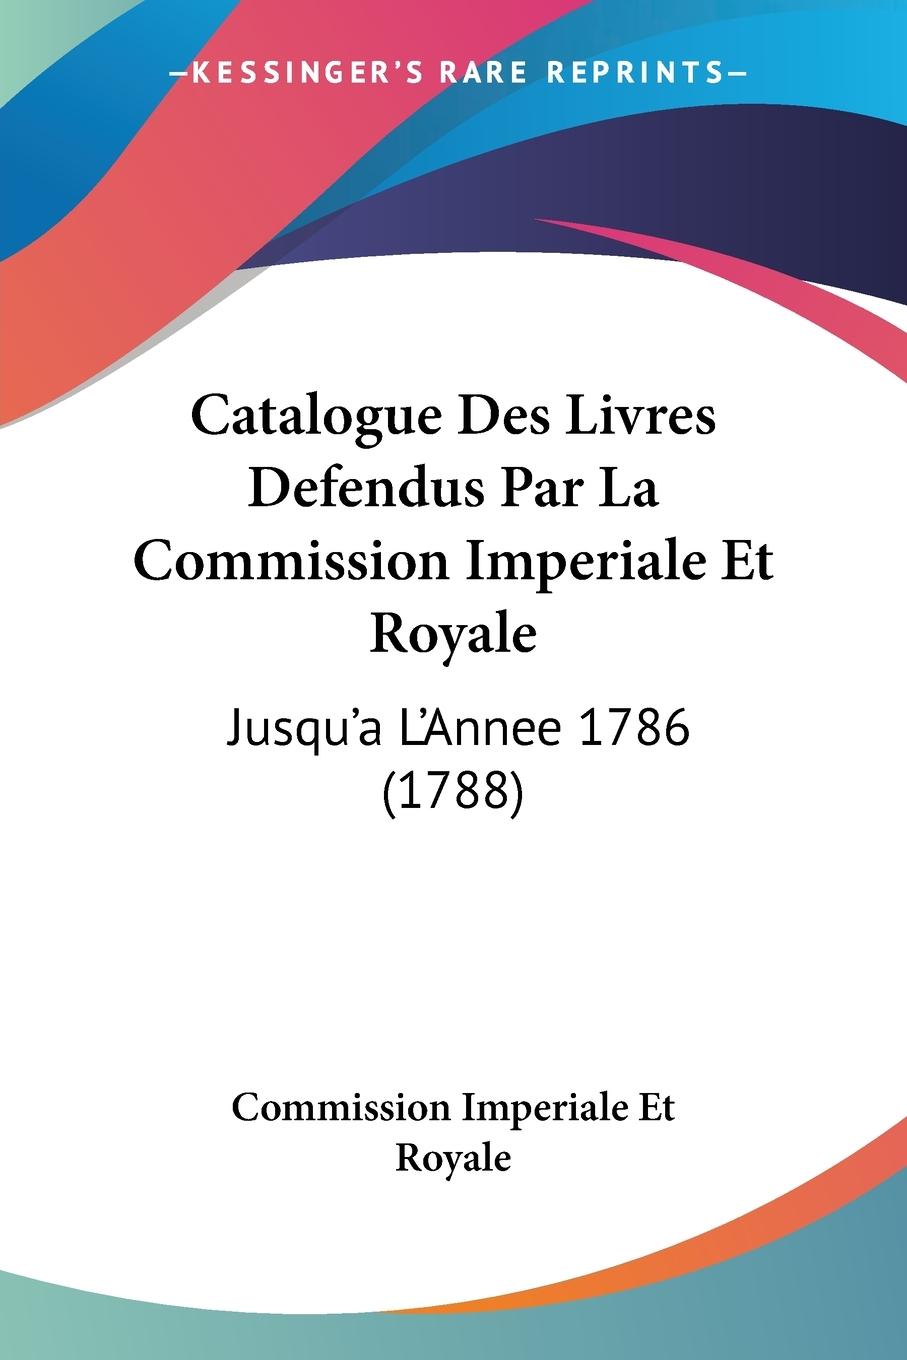 Catalogue Des Livres Defendus Par La Commission Imperiale Et Royale - Commission Imperiale Et Royale